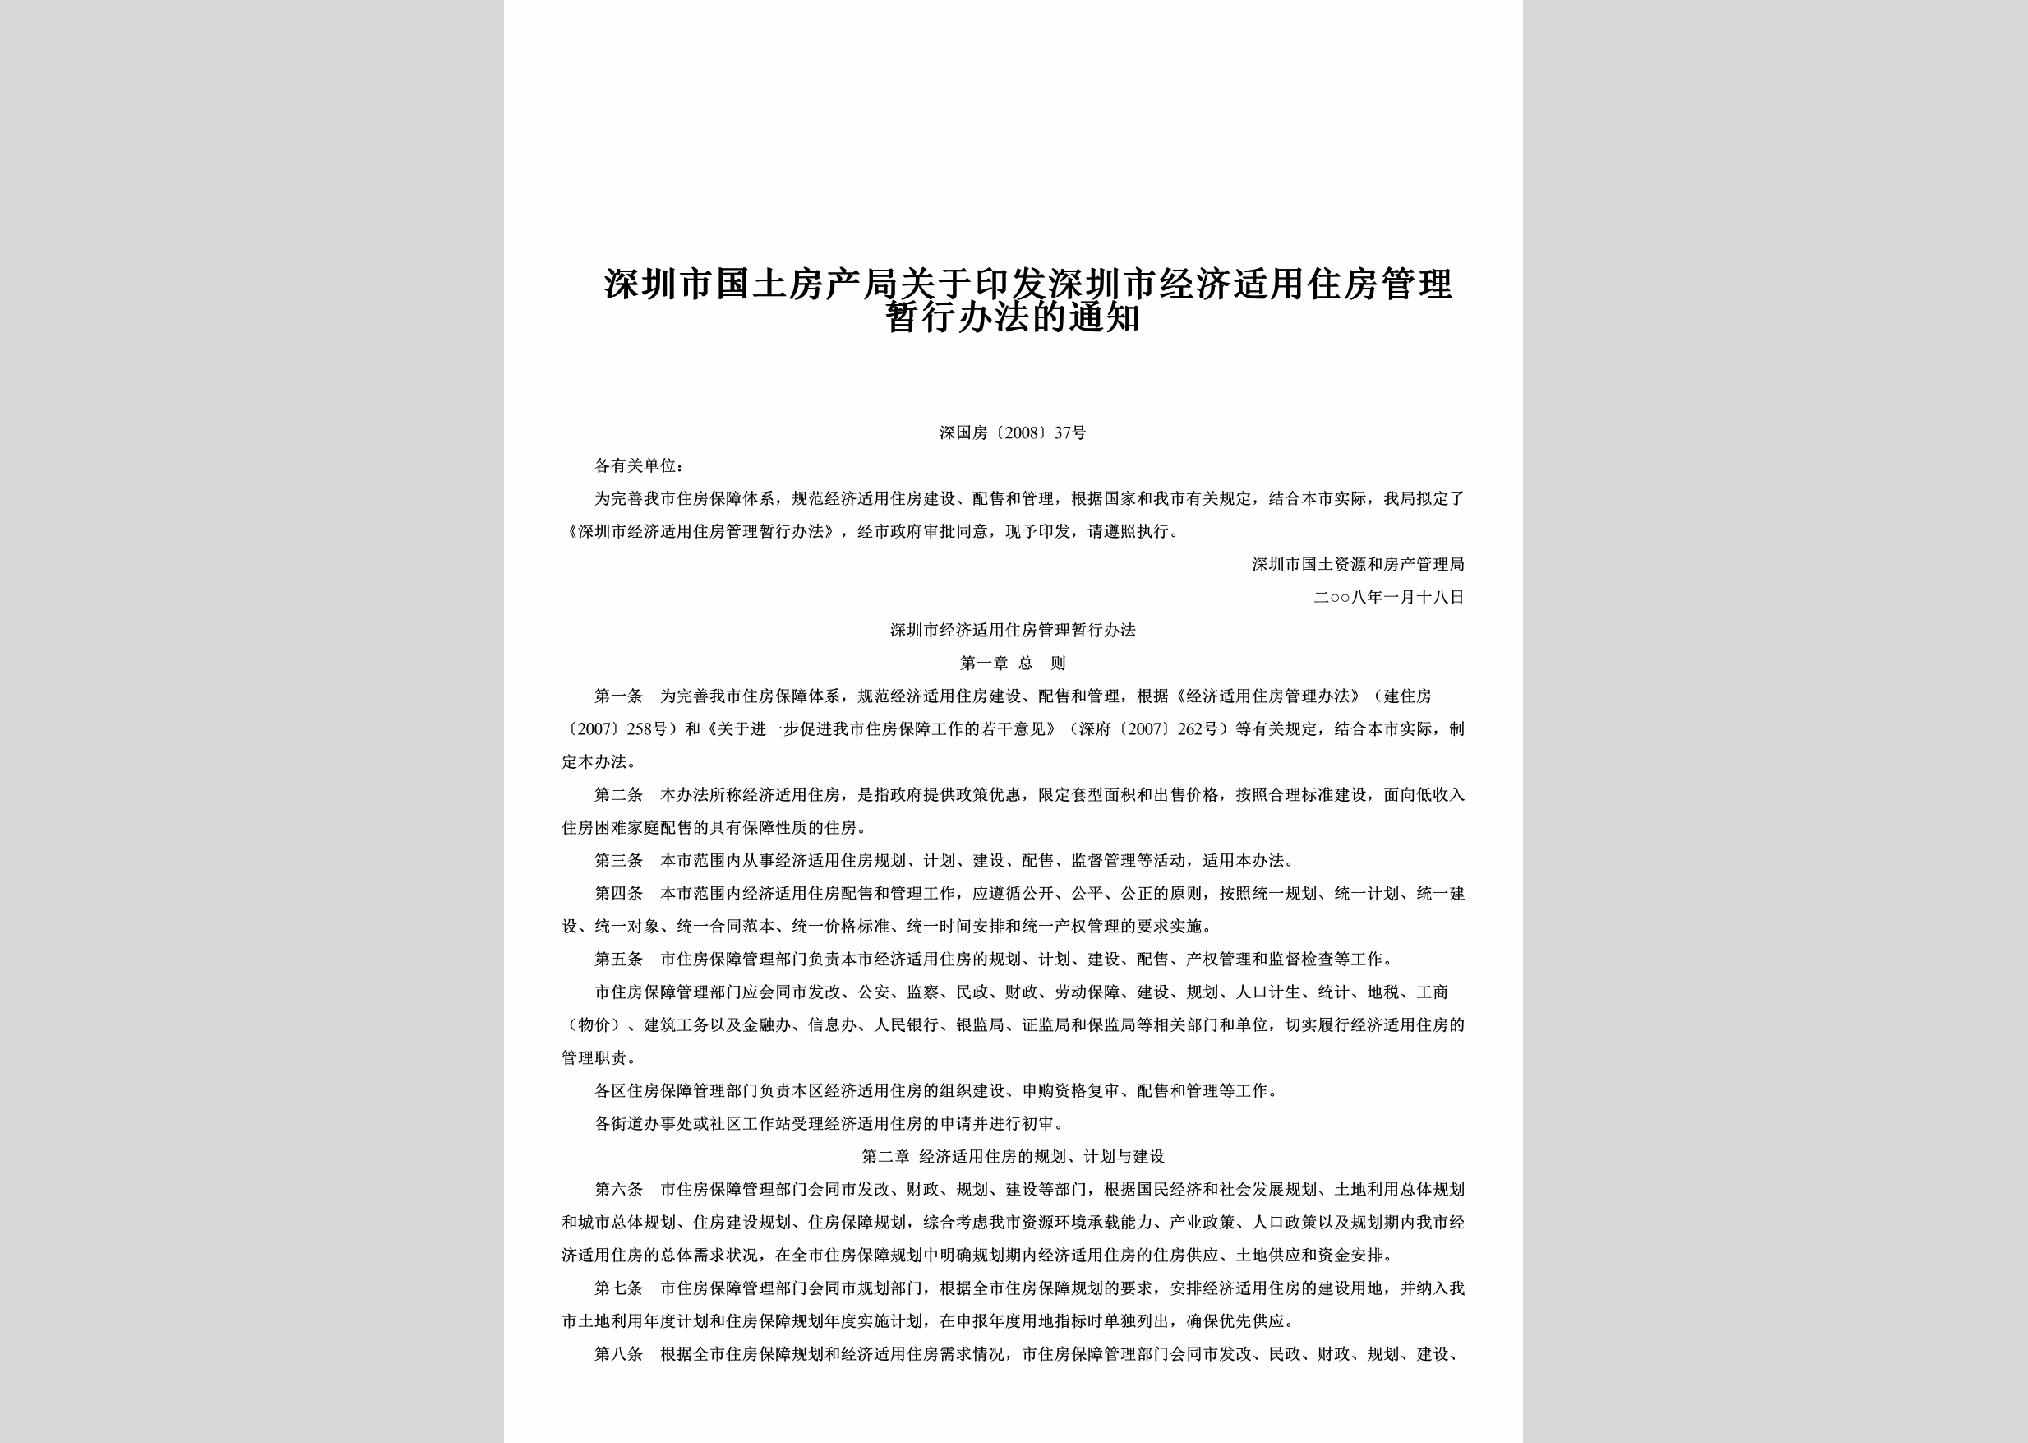 深国房[2008]37号：关于印发深圳市经济适用住房管理暂行办法的通知